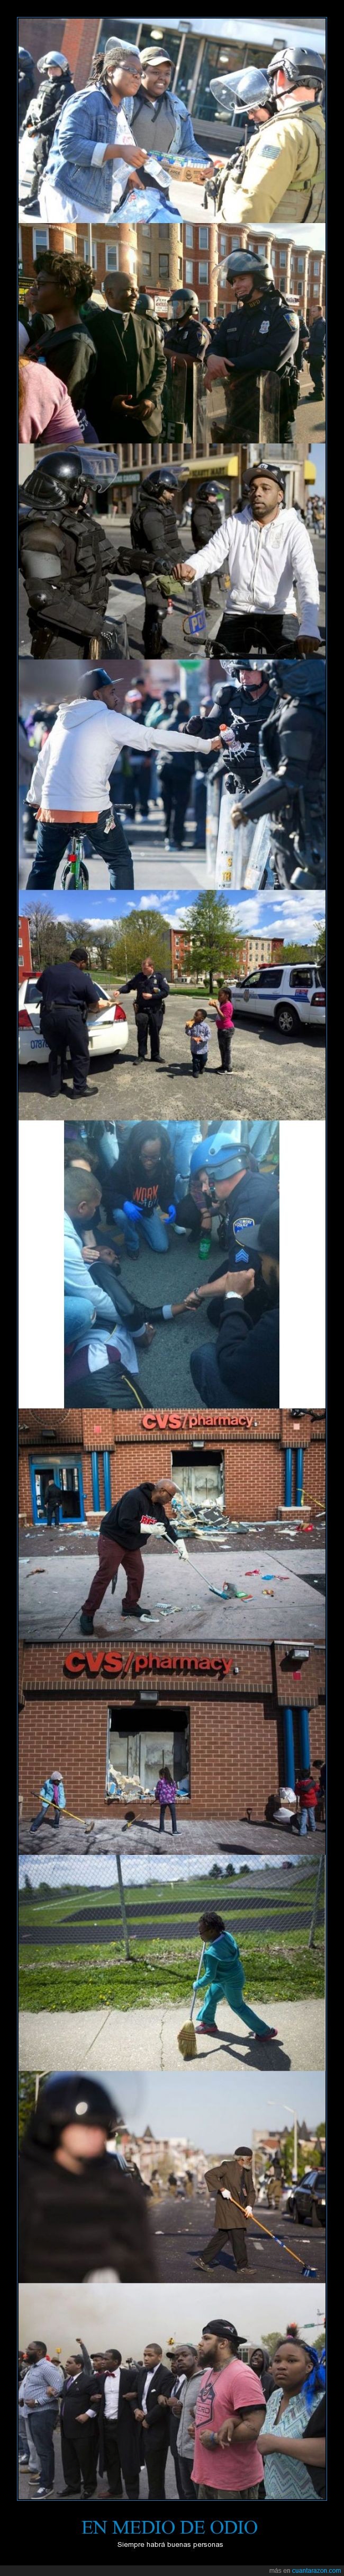 agua,amable,ayuda,ayudar,Baltimore,ciudadano,limpiar,llevar,manifestacion,niño,policia,racismo